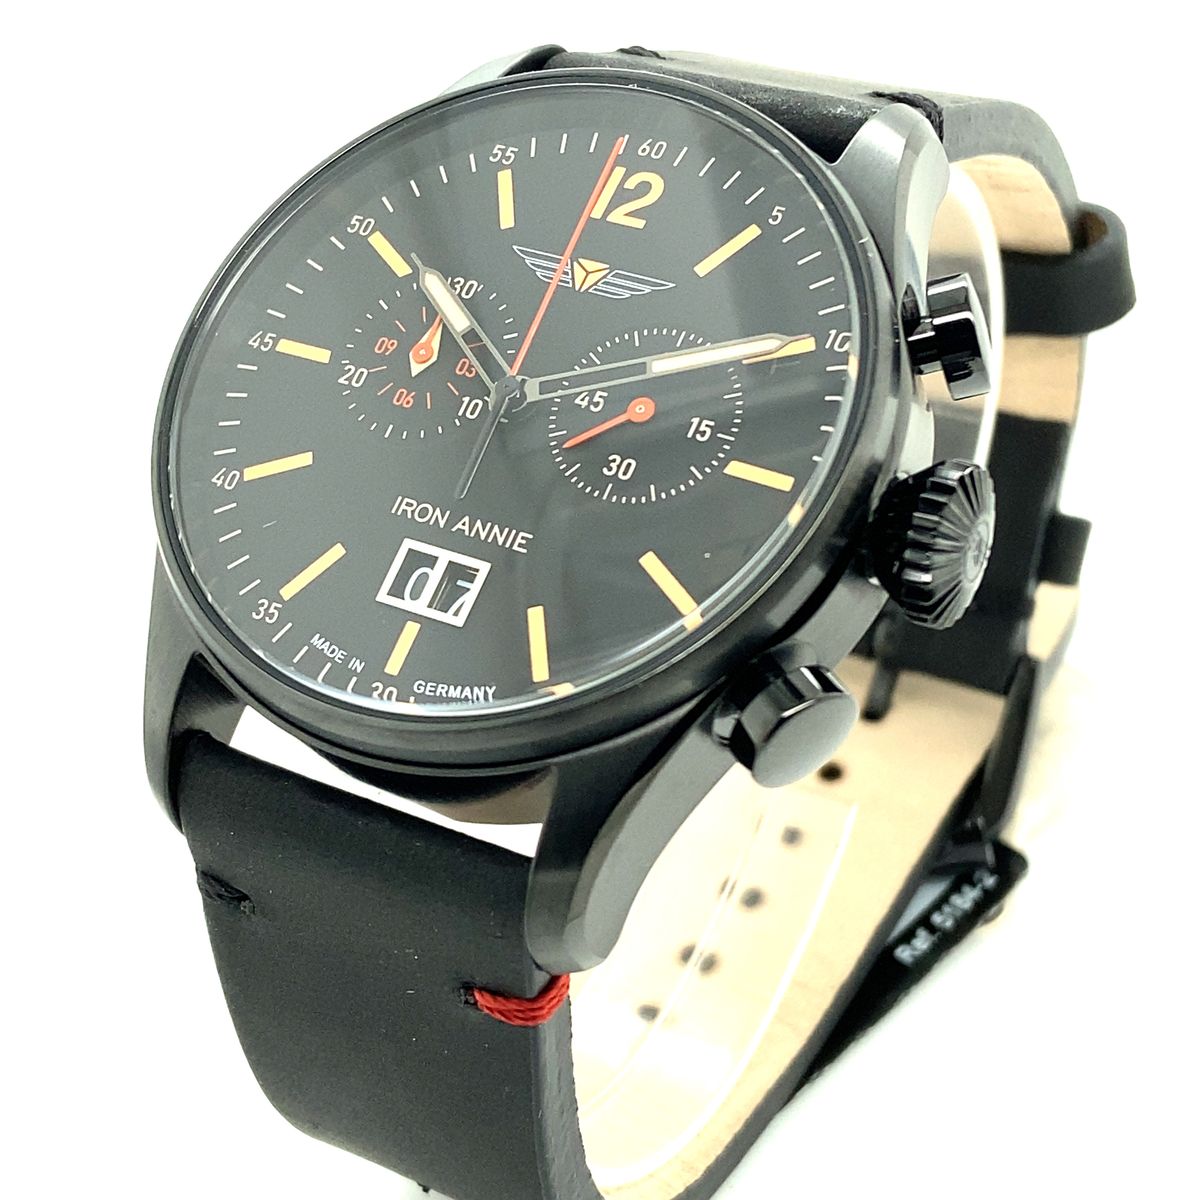 Iron Annie Flight Control Quarz, 5184-2, schwarz | Enjoy Your Watch, Online  Shop für Uhren, Uhrenzubehör und Uhren-Accessoires